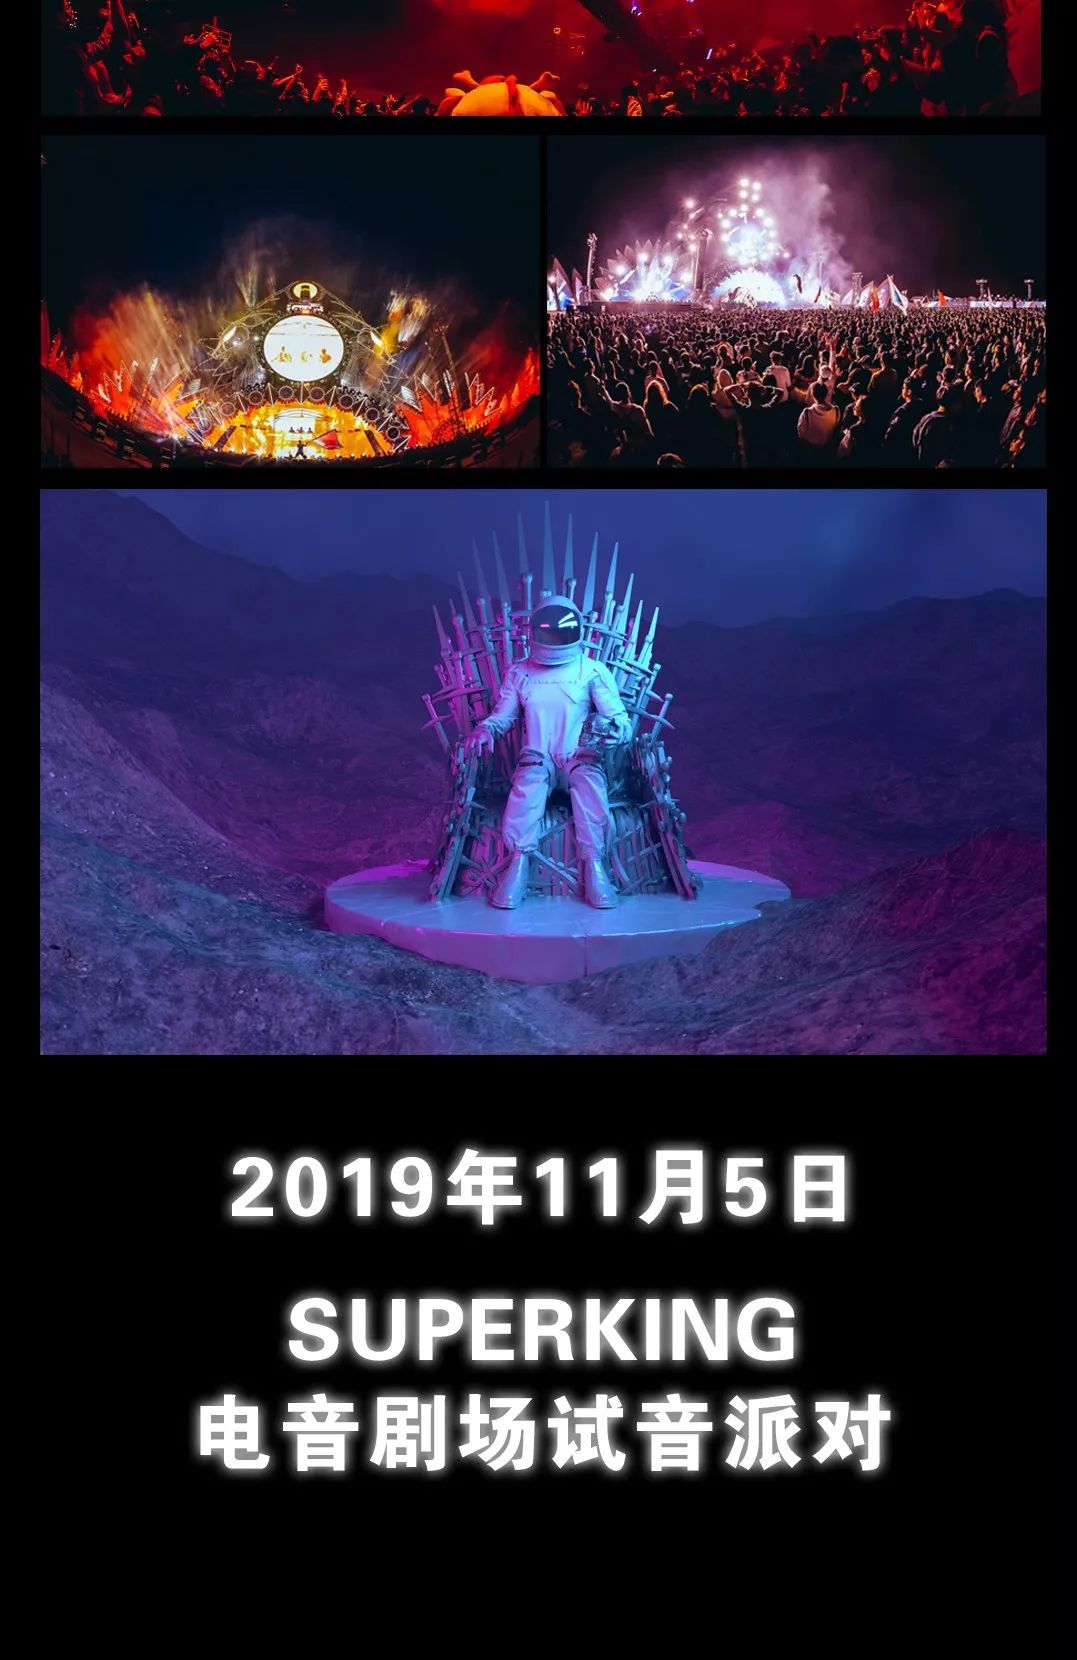 武威市superking电音剧场2019年11月5日全新品牌震撼开幕保持期待稍后